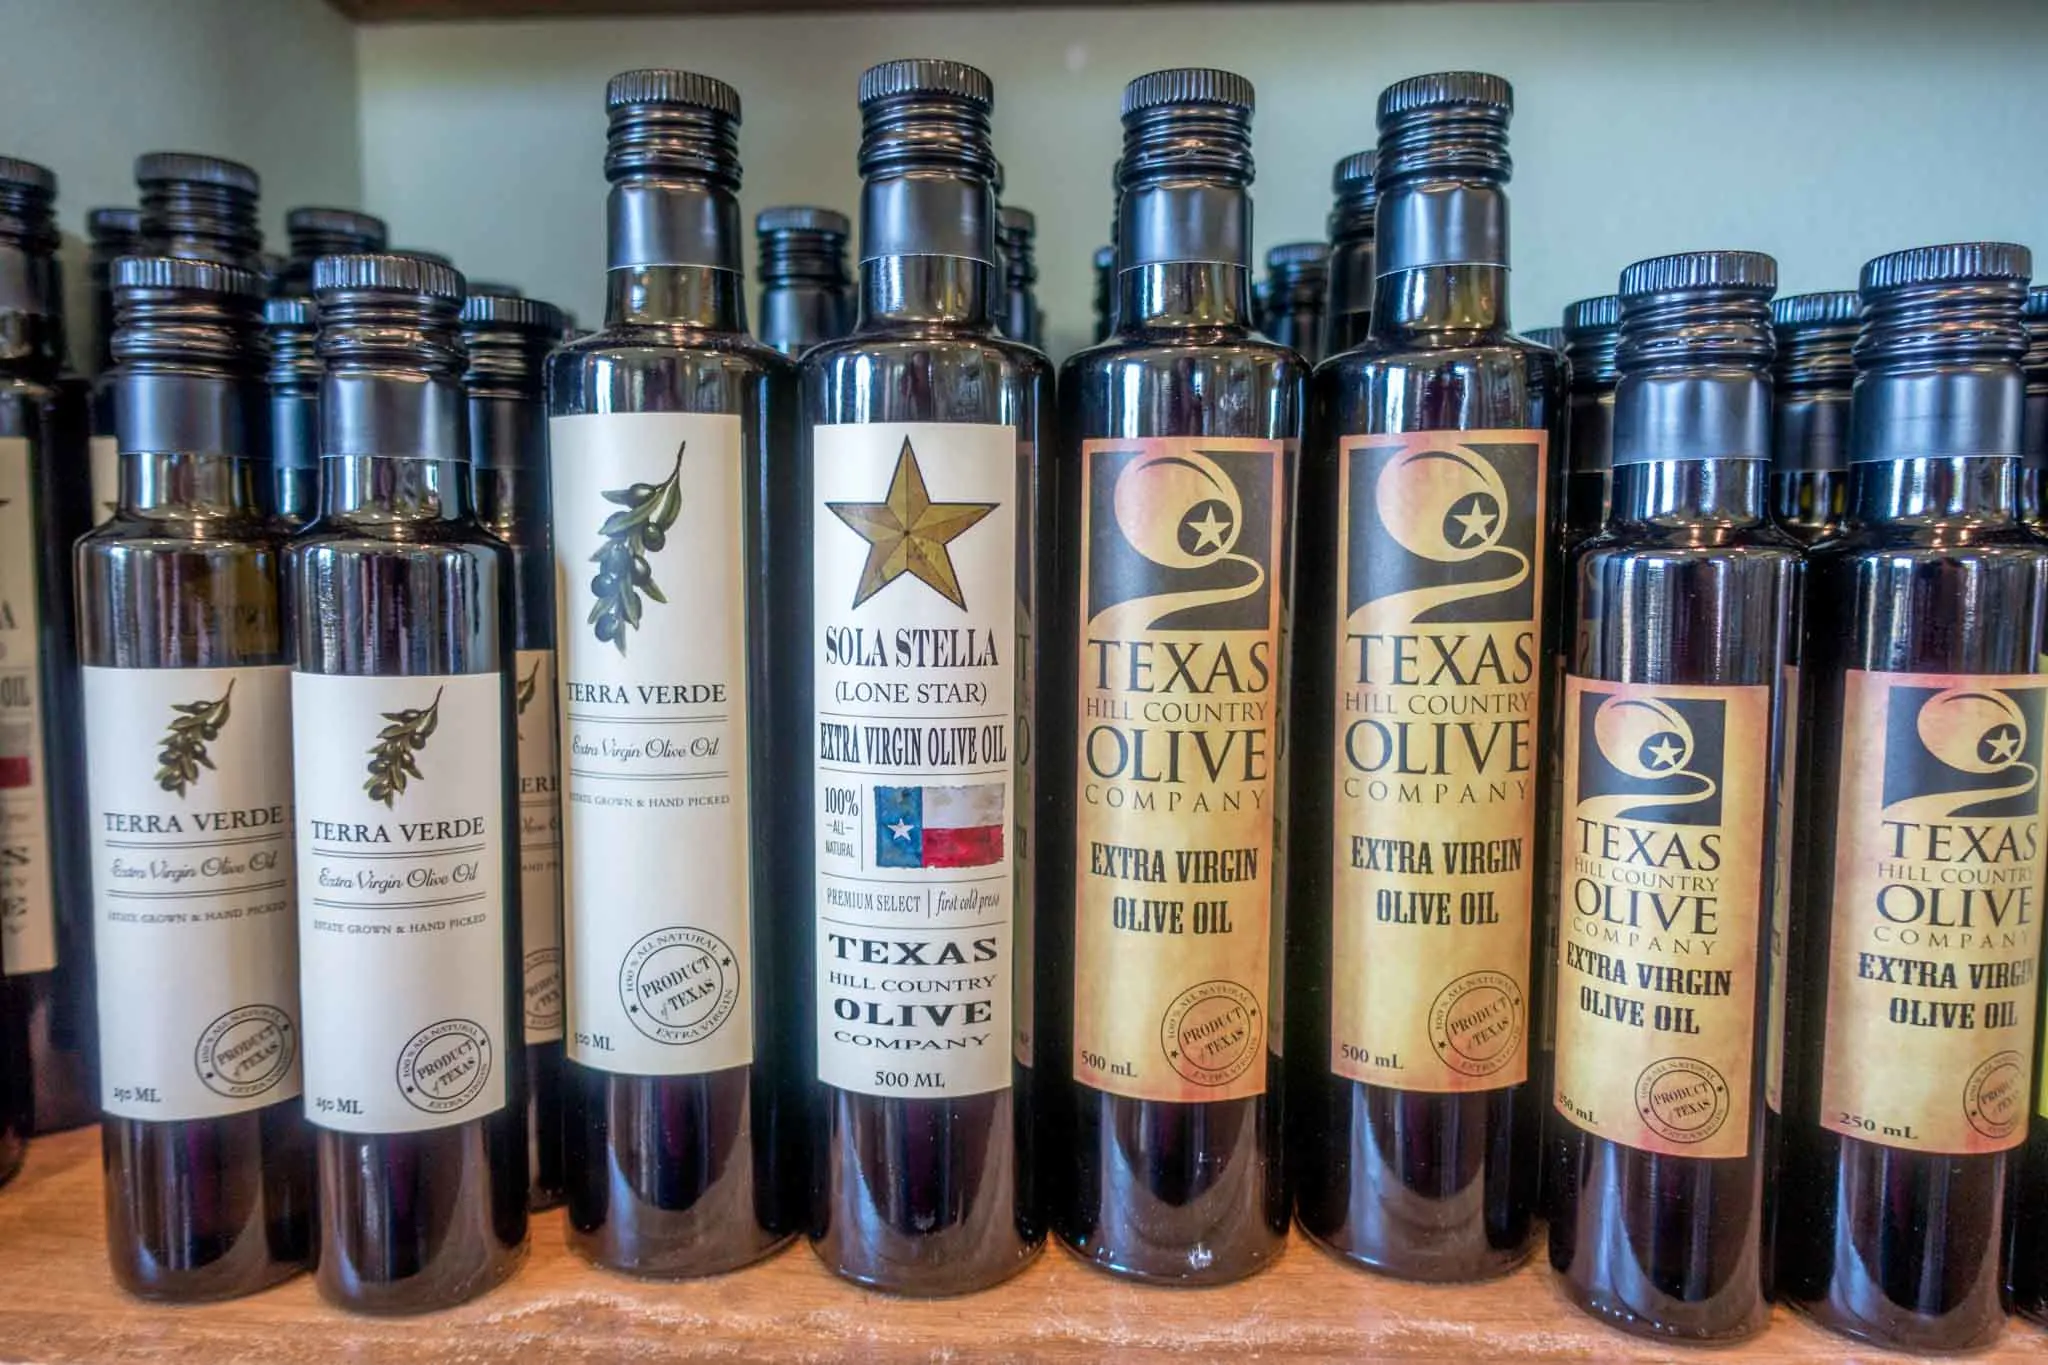 Bottles of olive oil on shelf.